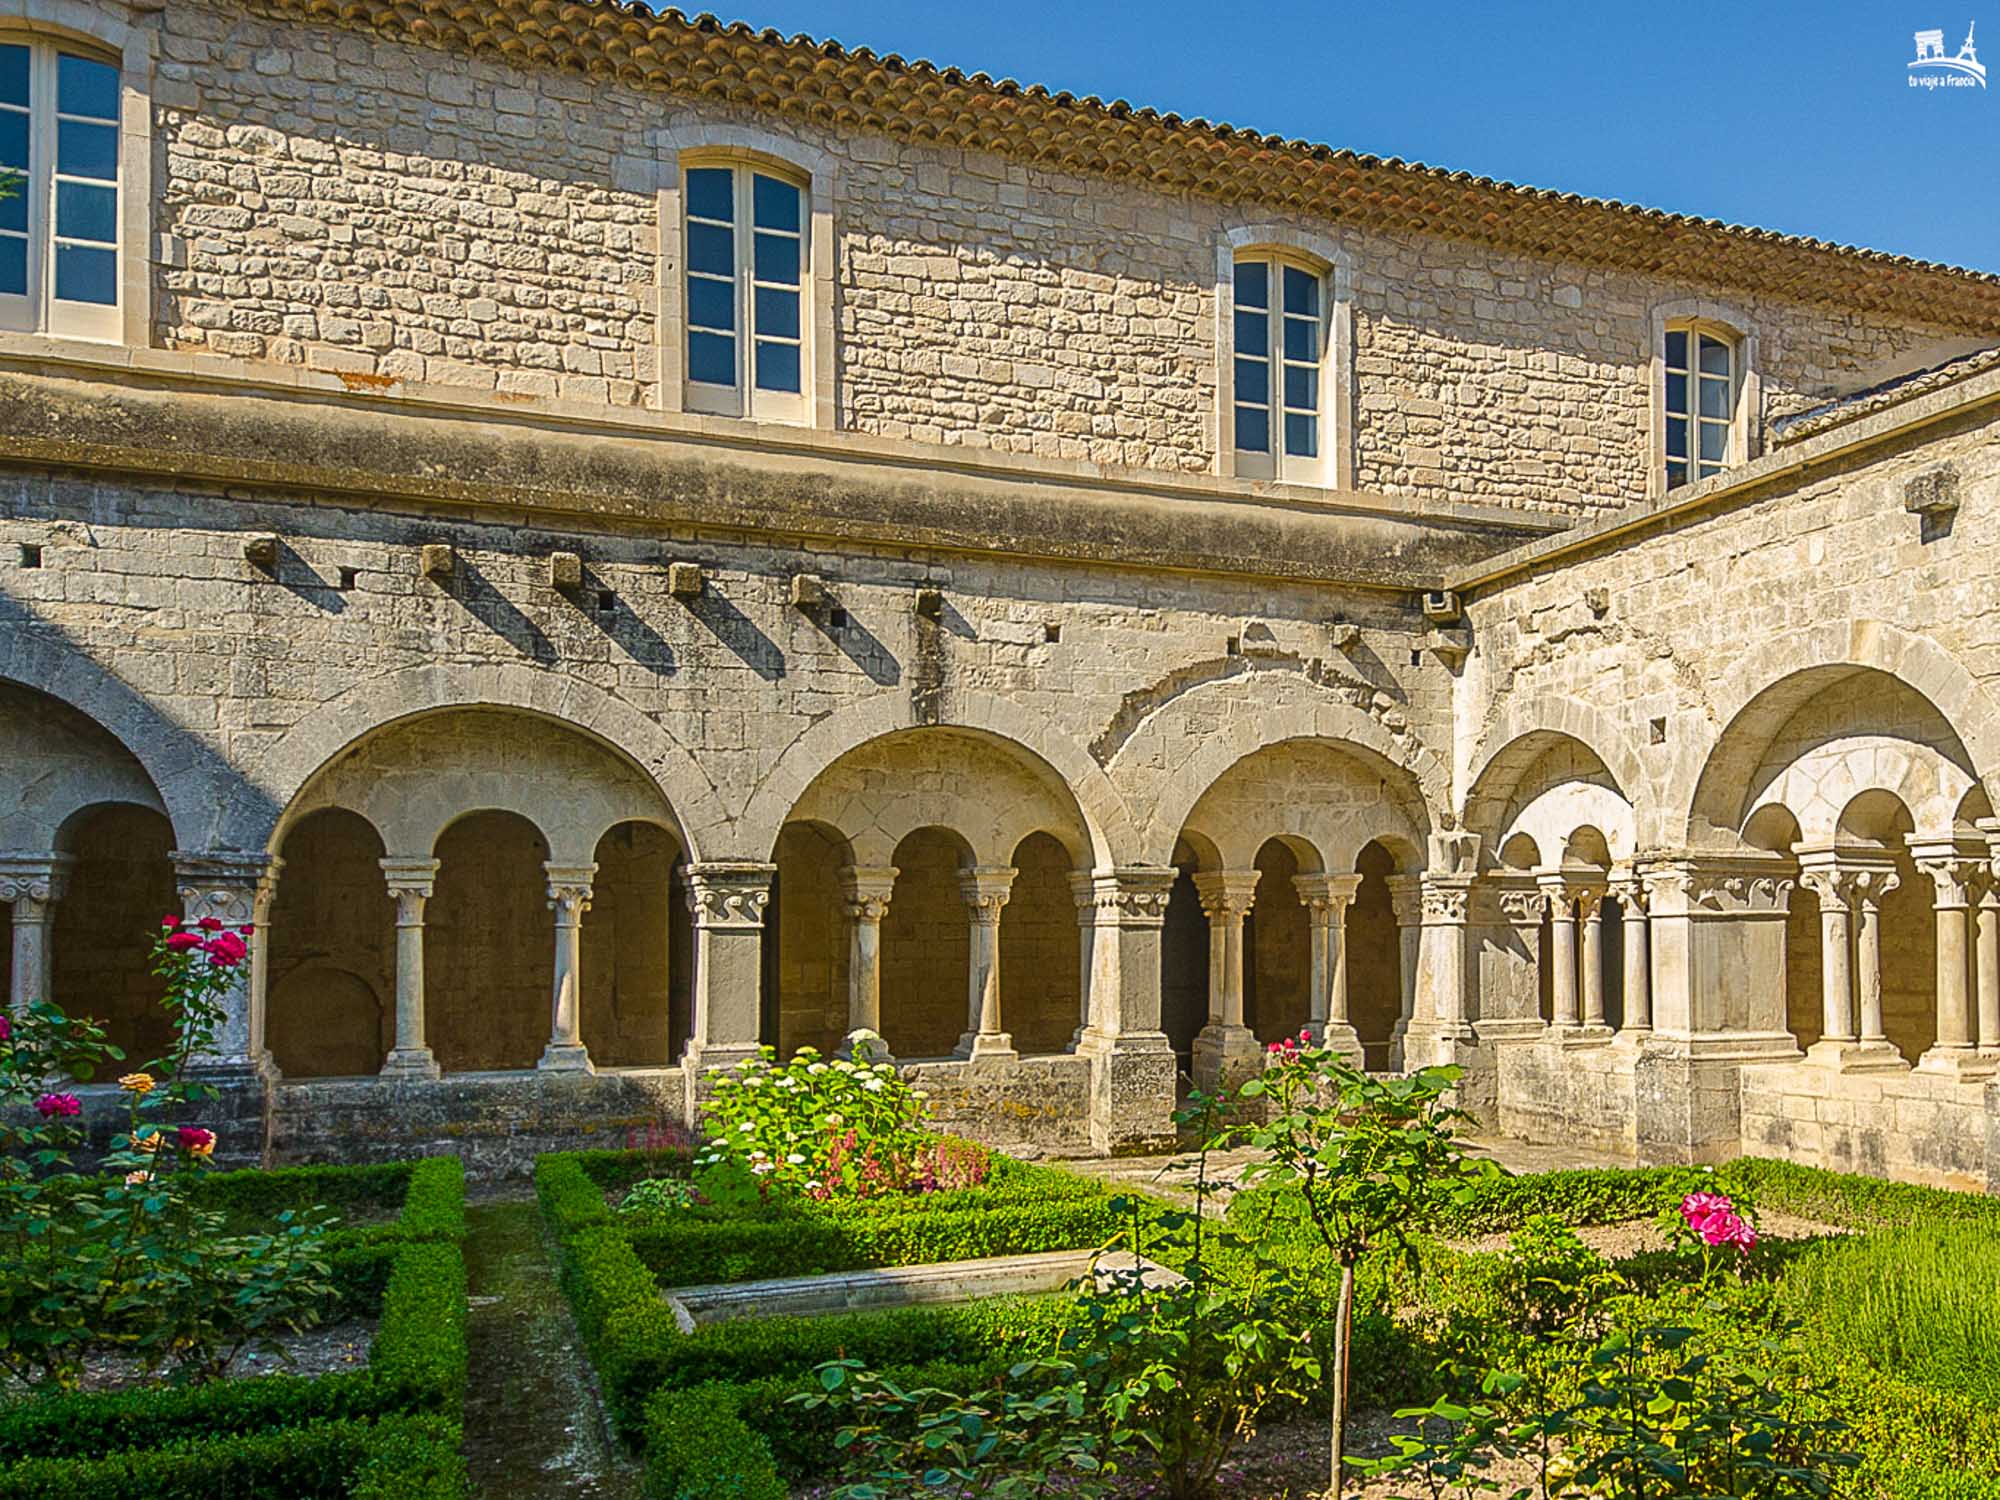 Claustro de la Abadía de Senanque, qué ver en la Provenza francesa